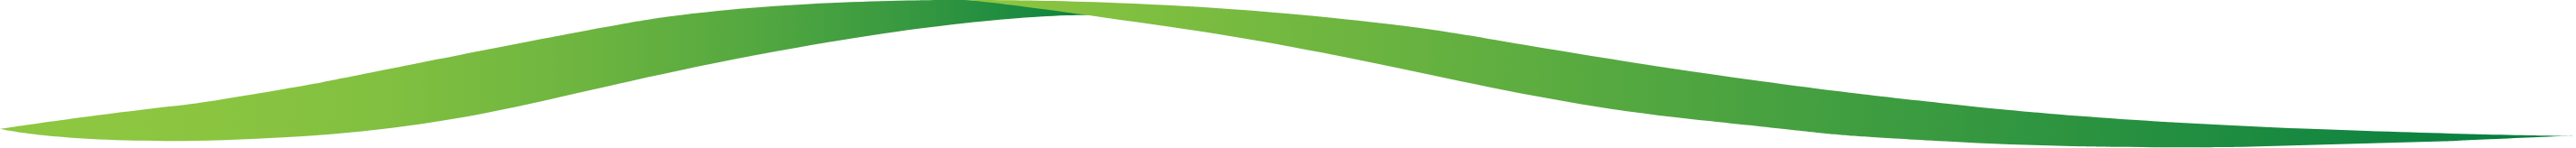 Green banner